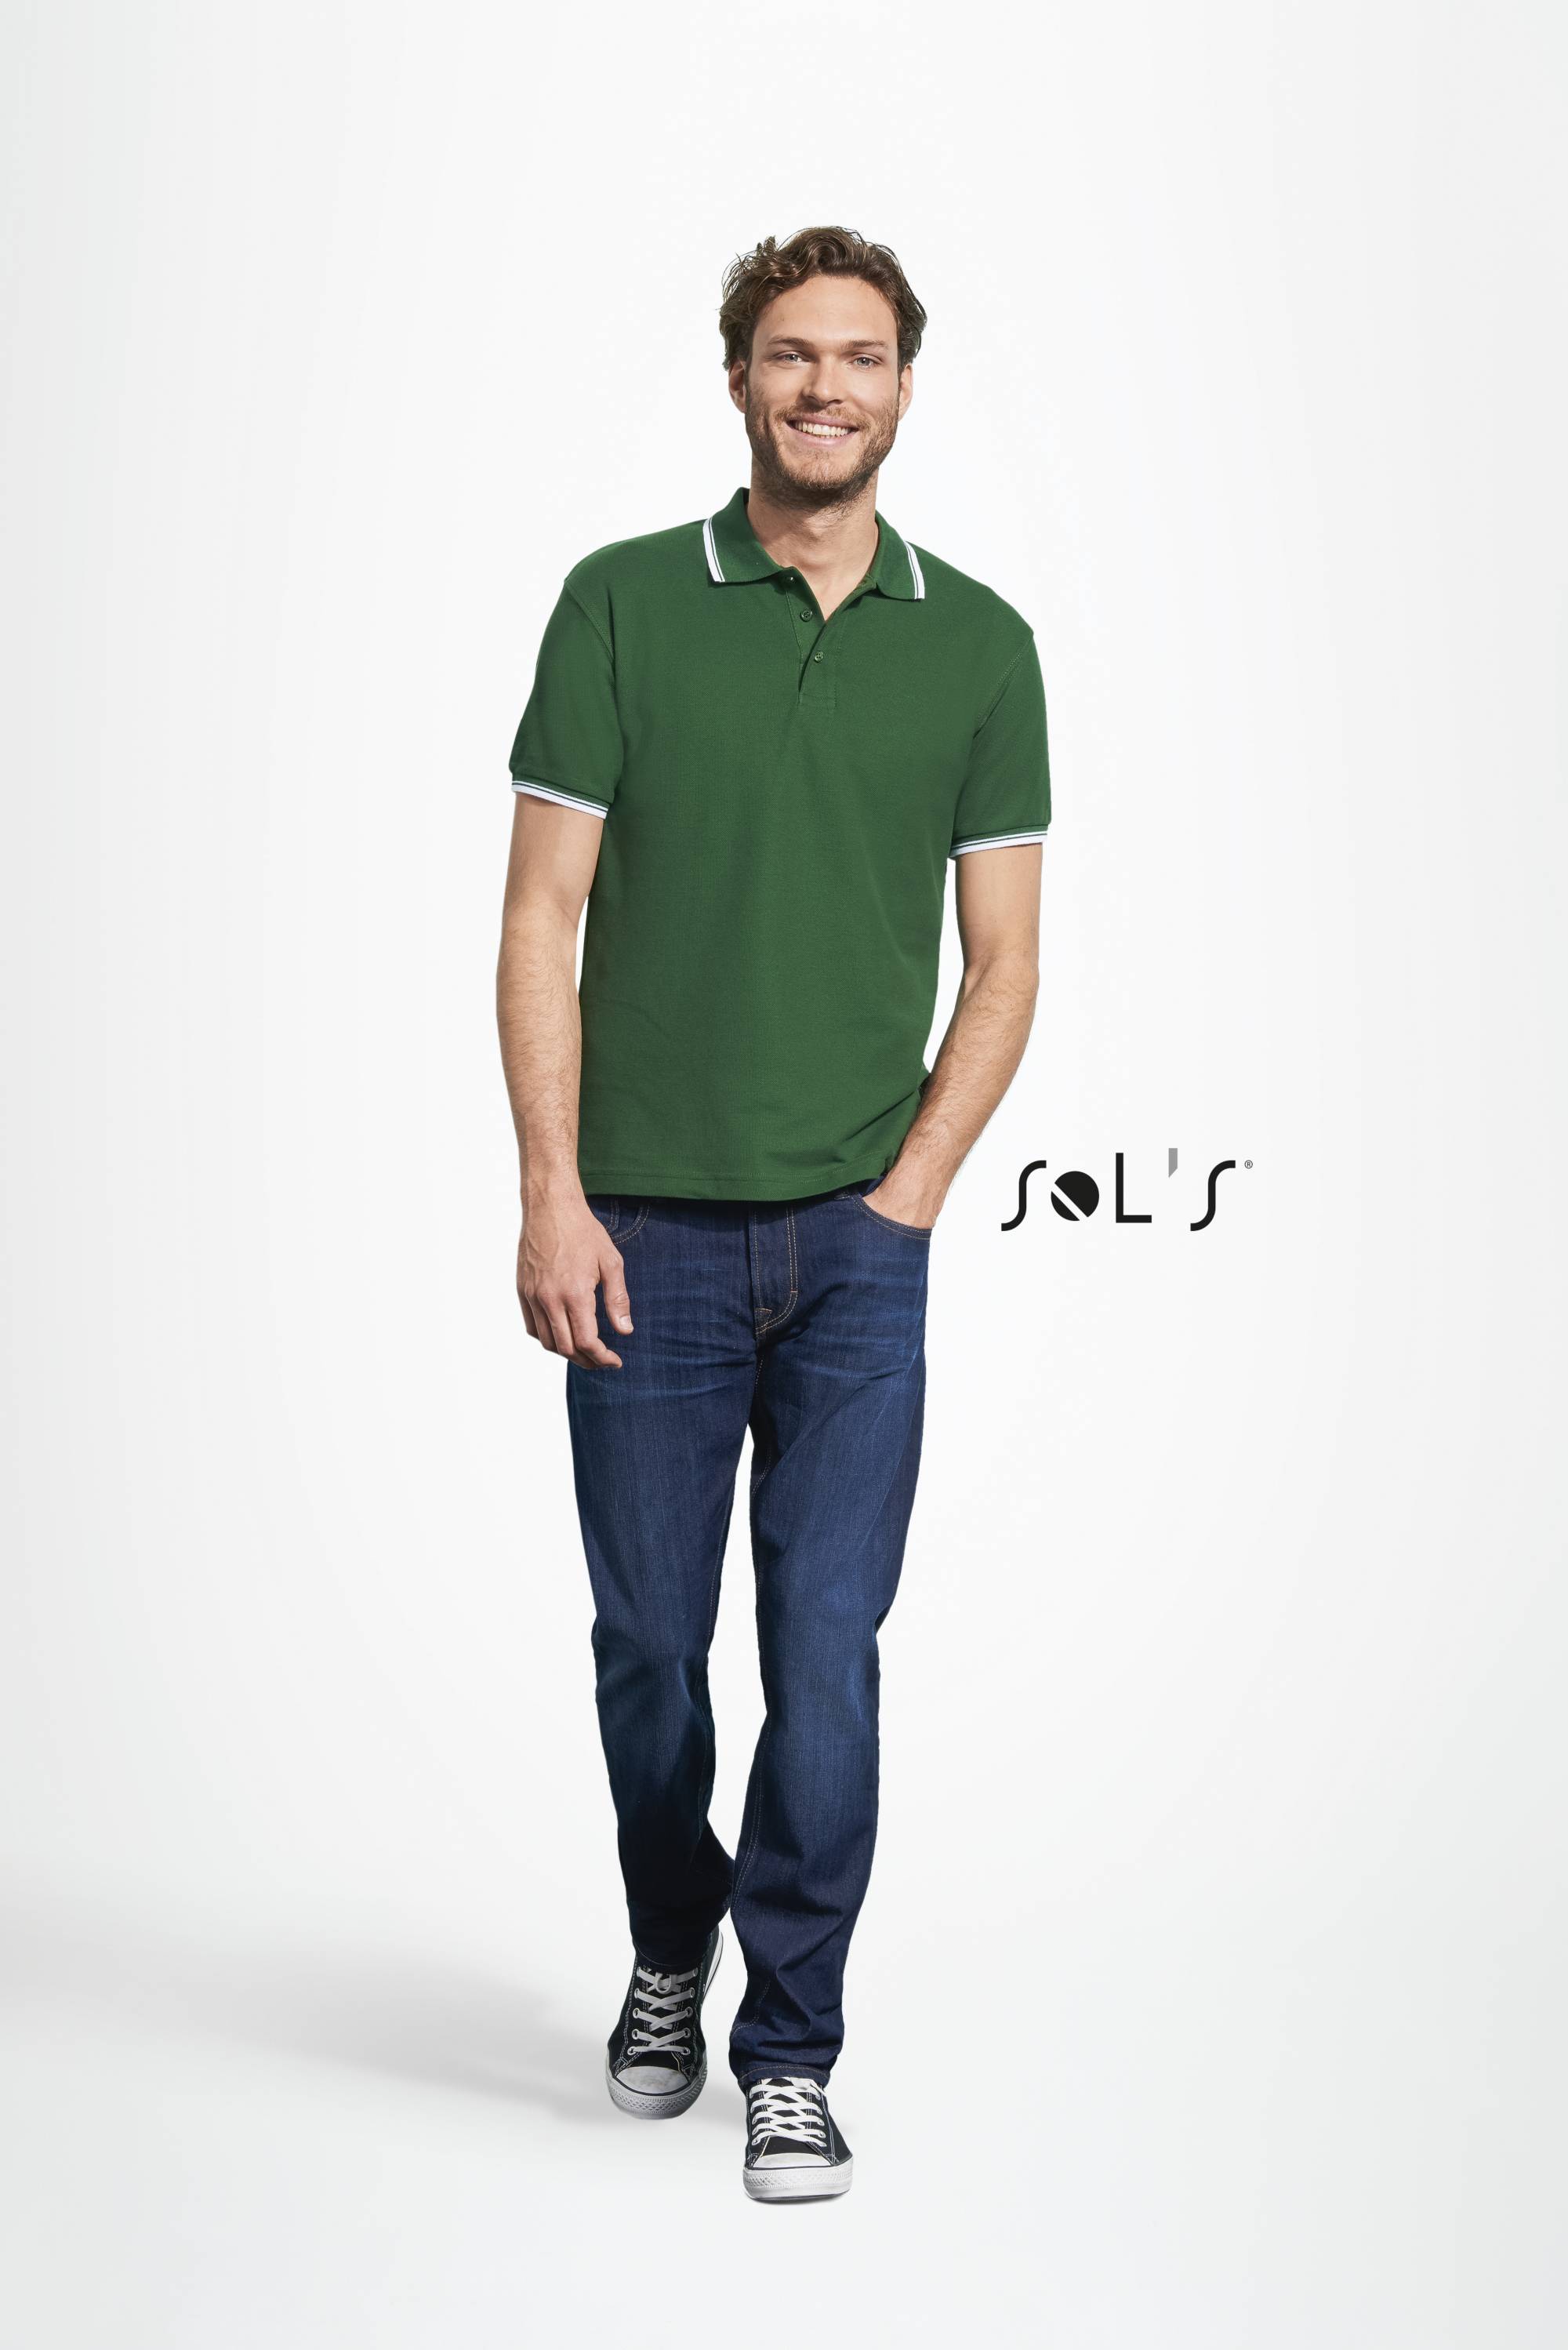 Jeune homme debout en jean et polo de qualité vert personnalisé